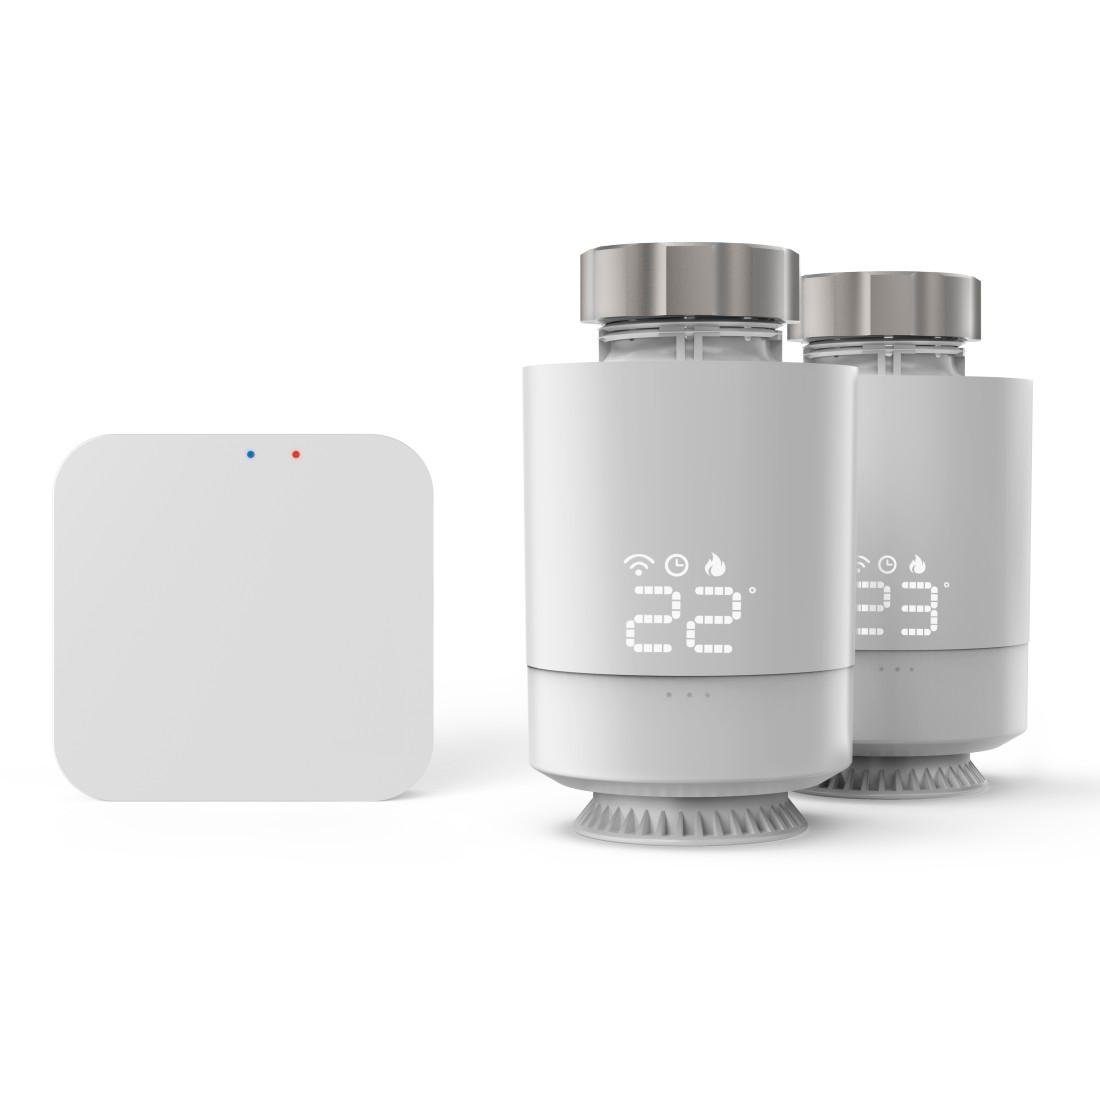 + 2x Heizungsthermostat, Hub Set Smart-Home smart WLAN Heizungssteuerung, Adapter Starter-Set Hama